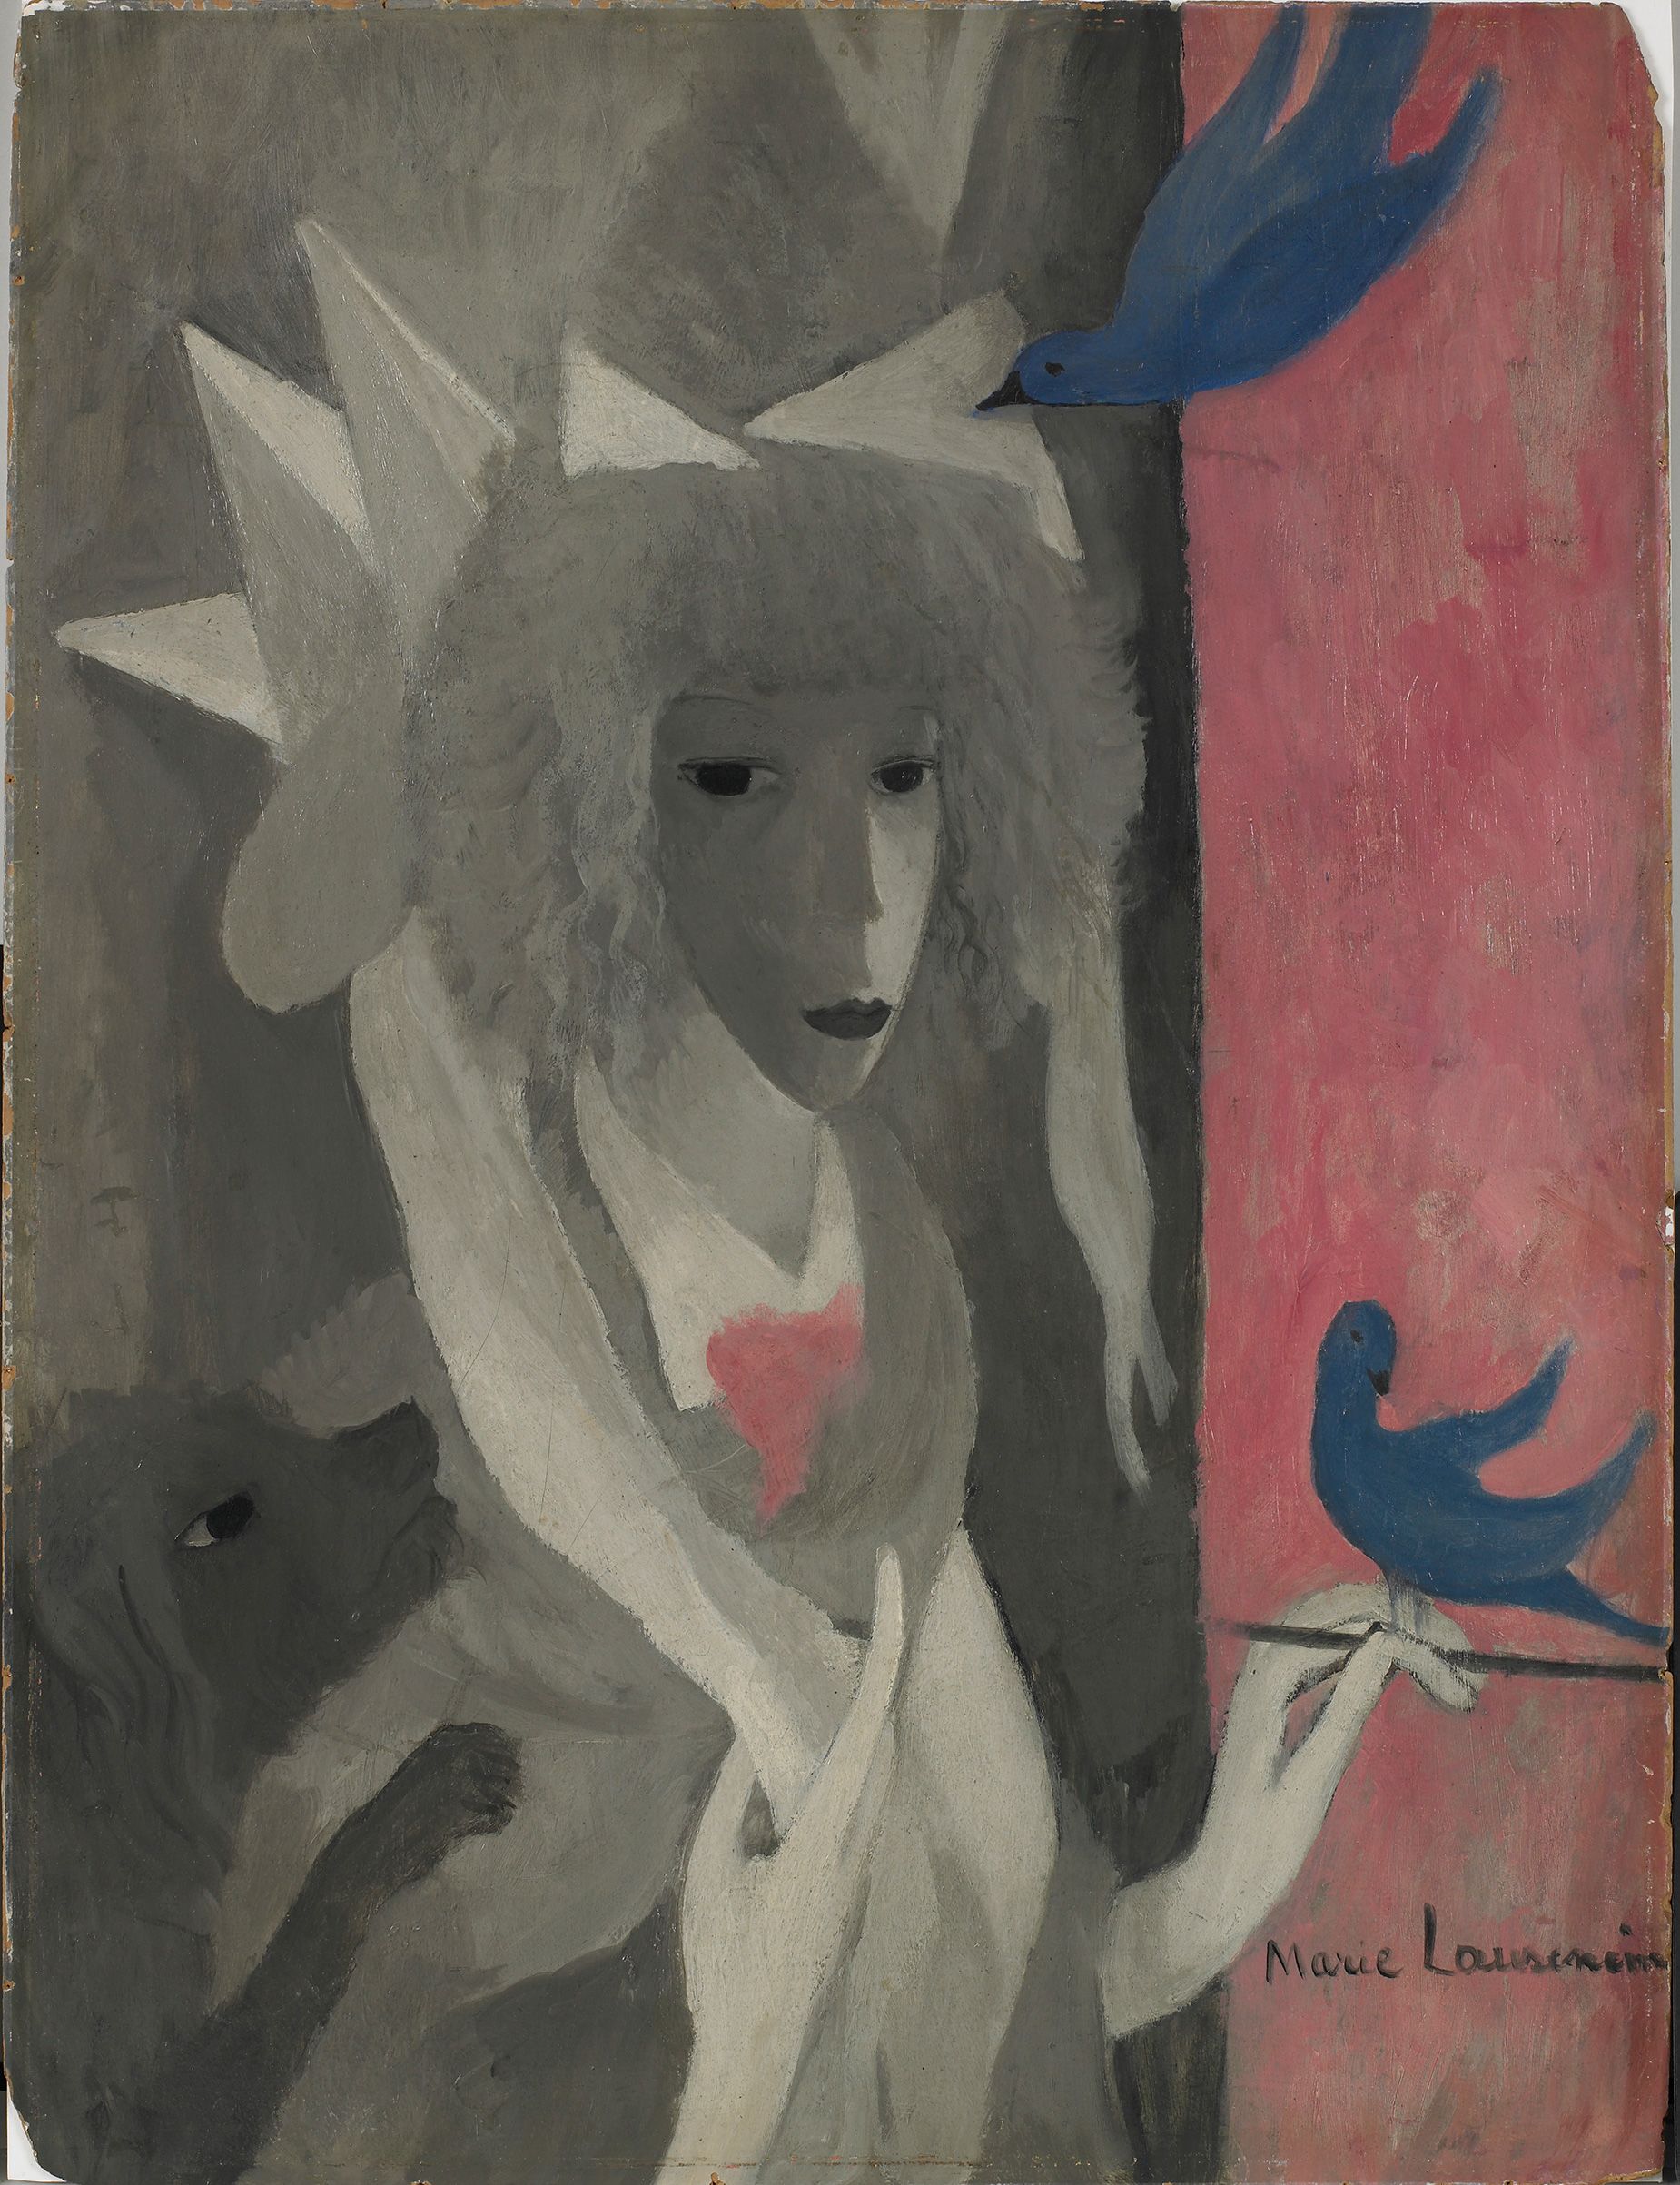 The Woman-Horse (La femme-cheval), 1918. Musée Marie Laurencin, Tokyo